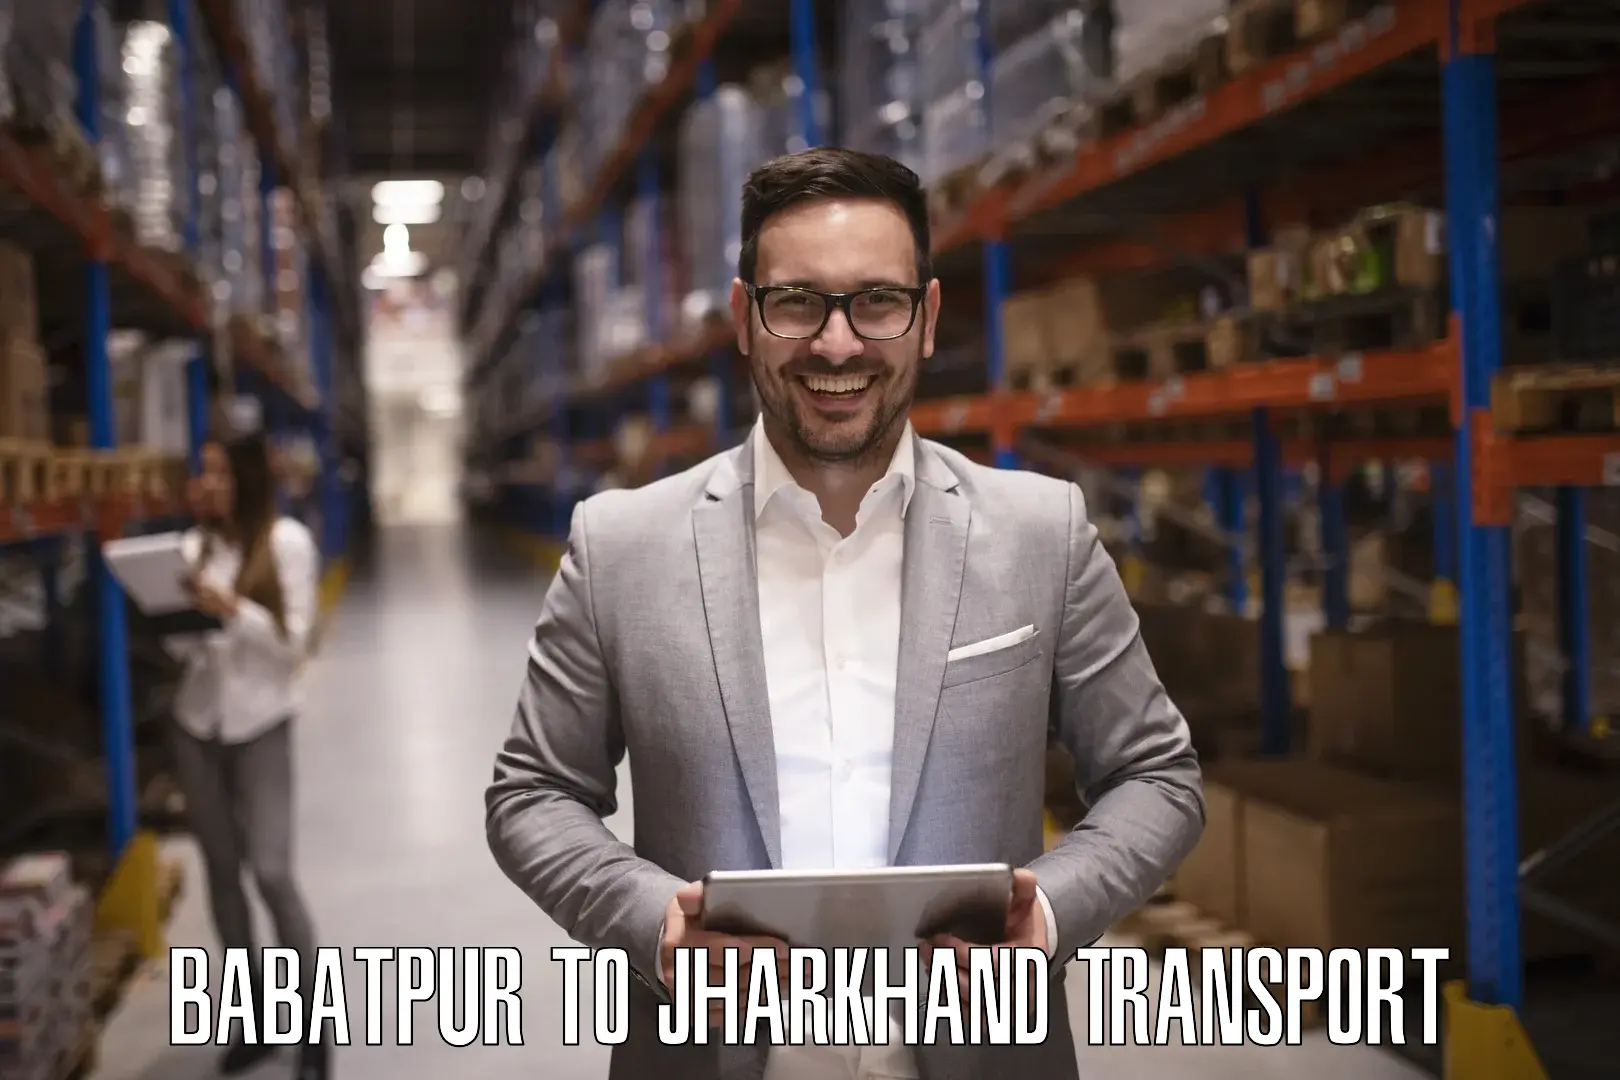 Furniture transport service Babatpur to Bero Ranchi